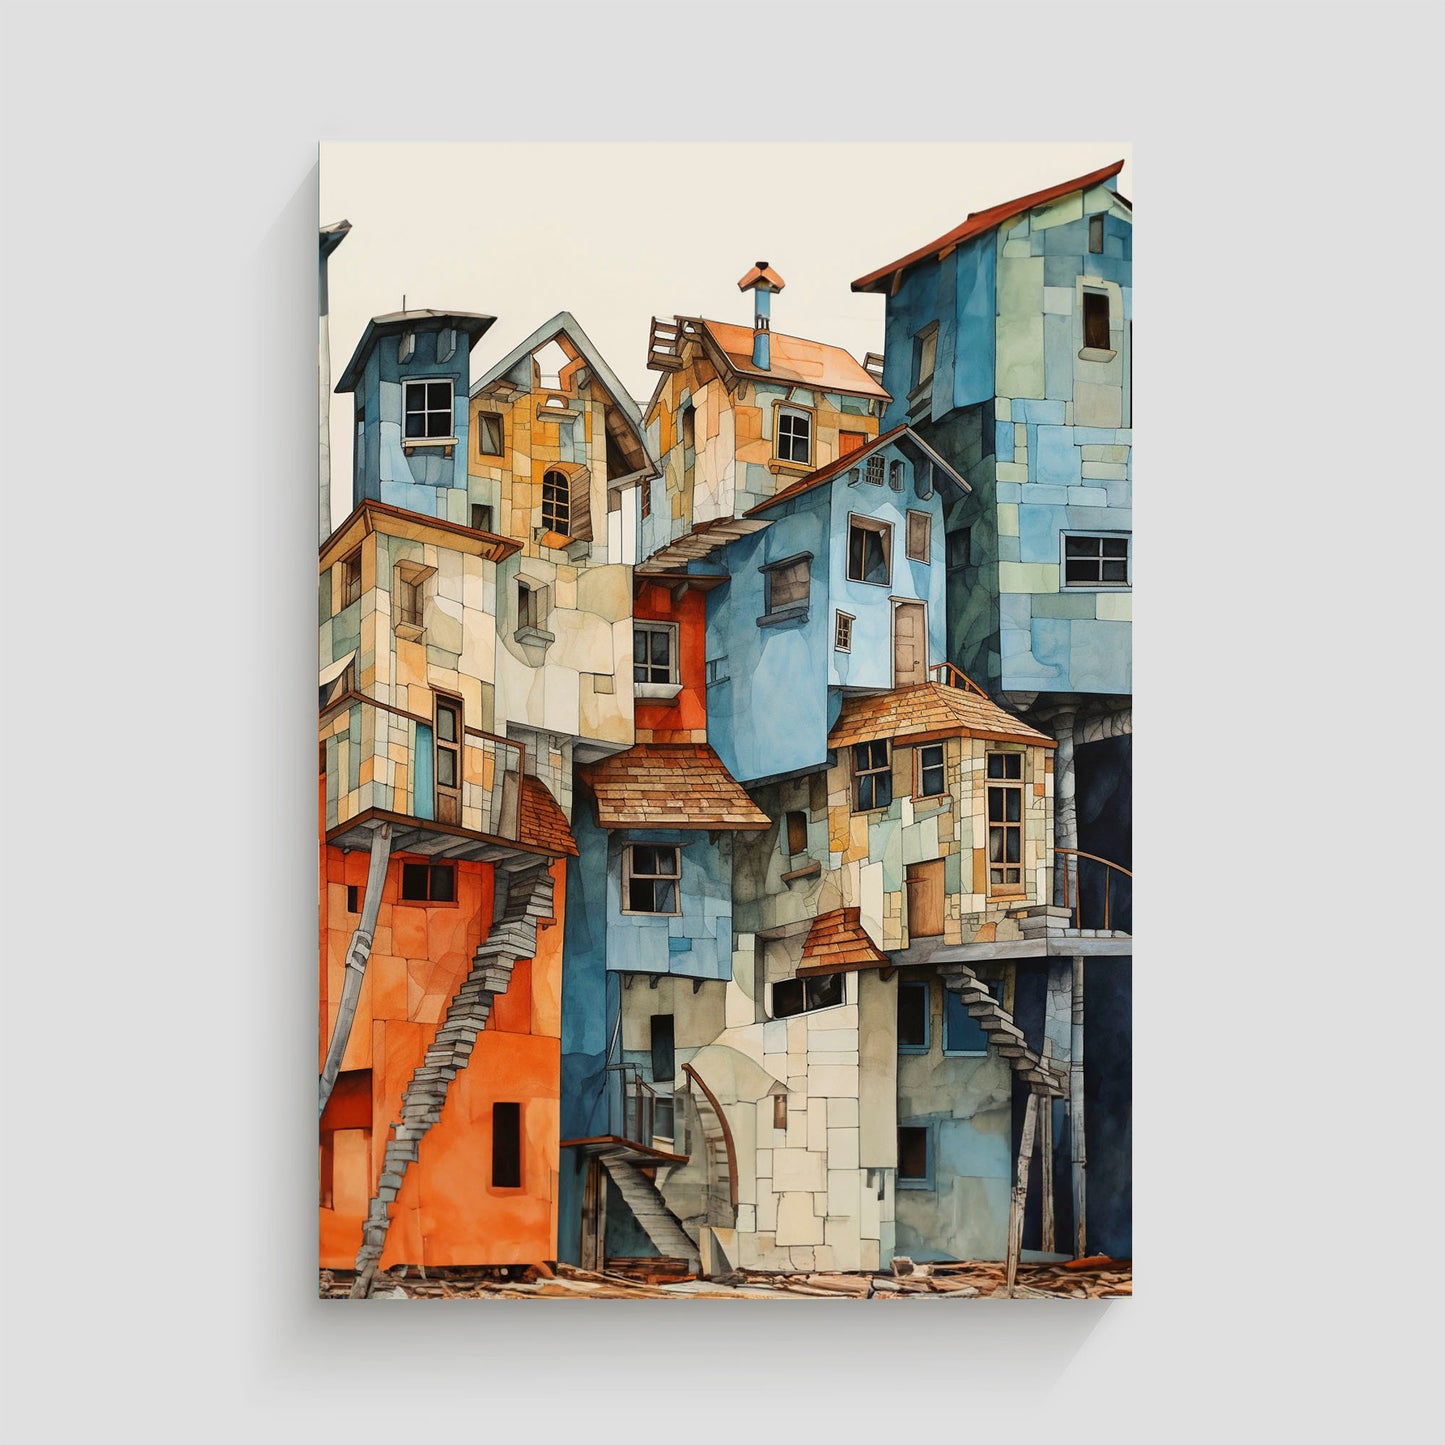 Imagen de una serie de edificios pintorescos con fachadas coloridas y arquitectura única, mostrando detalles intrincados de escaleras y tejados en una disposición artística y compleja.